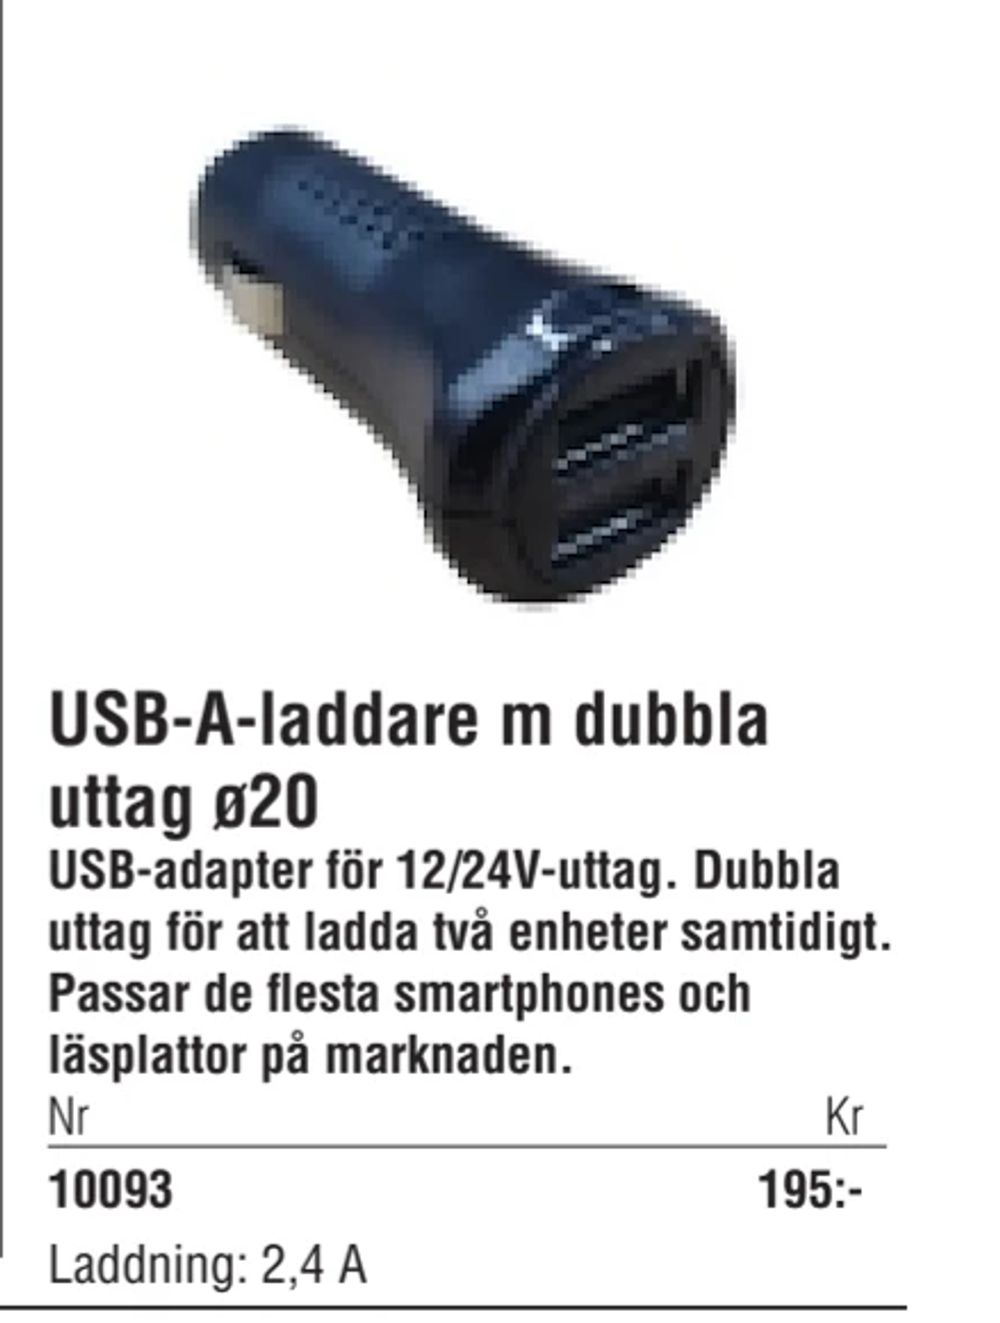 Erbjudanden på USB-A-laddare m dubbla uttag ø20 från Erlandsons Brygga för 195 kr